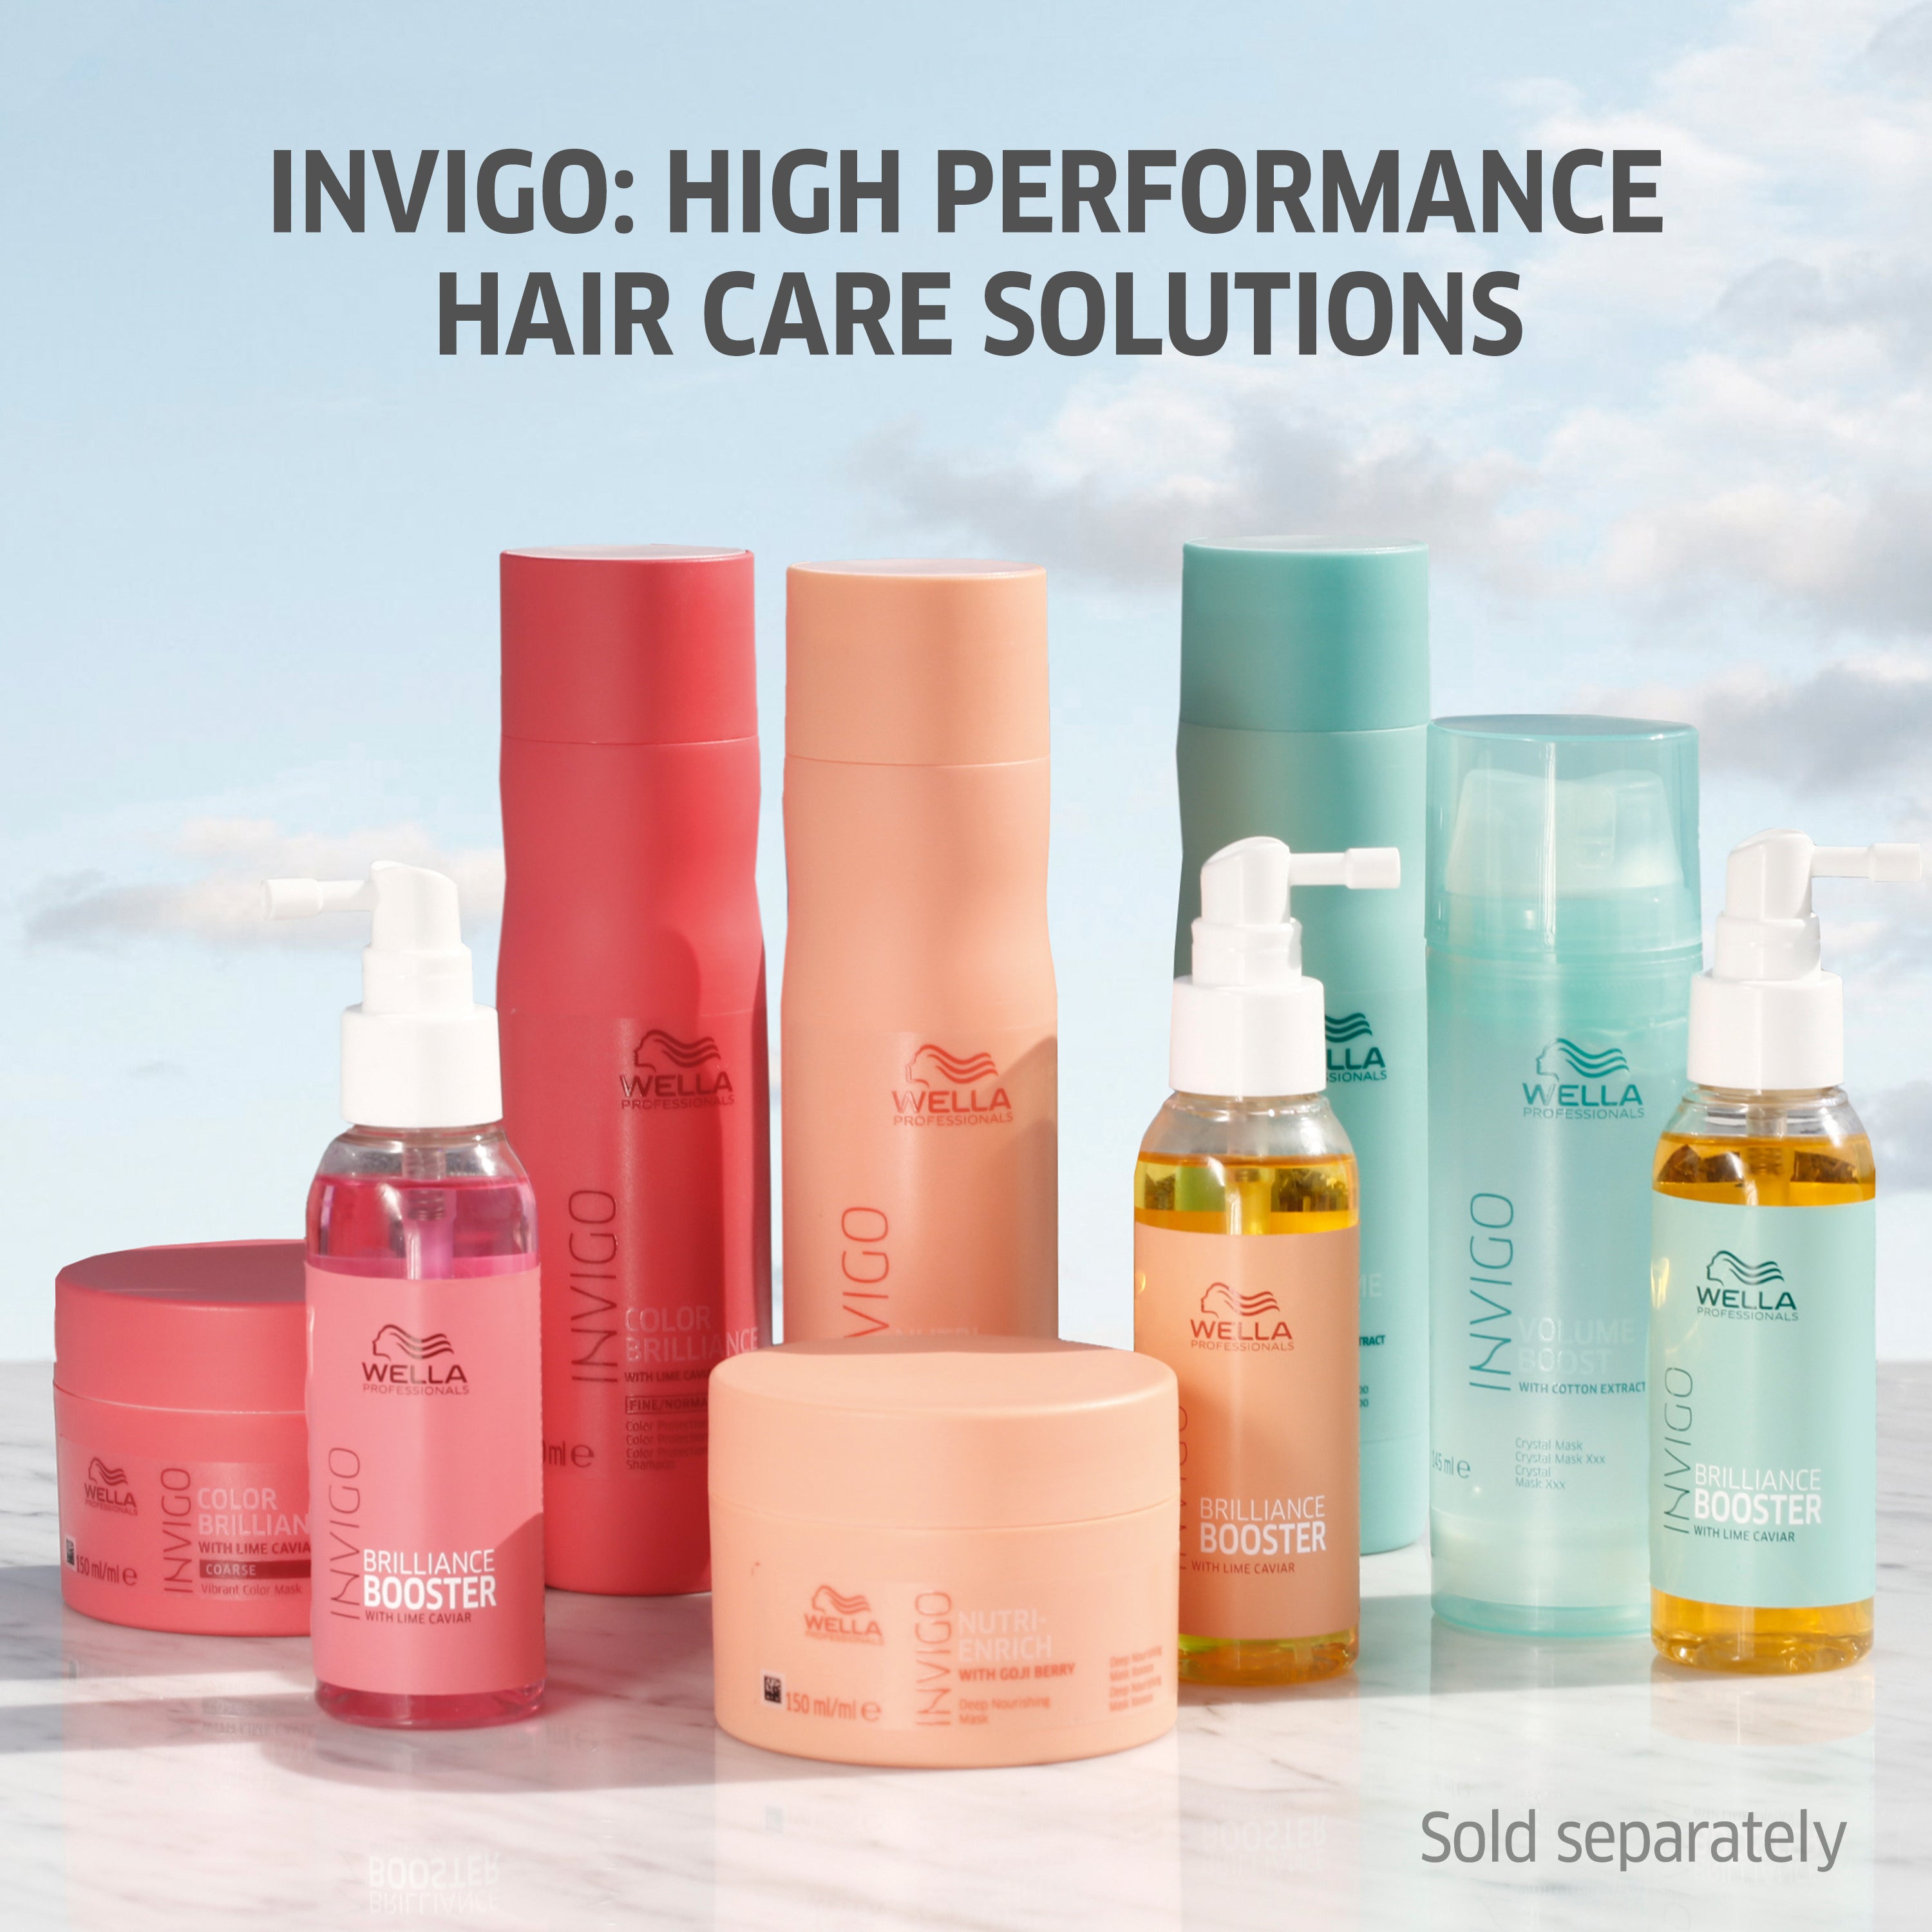 Wella Professional Invigo Shampoo 1000 ML Enrich